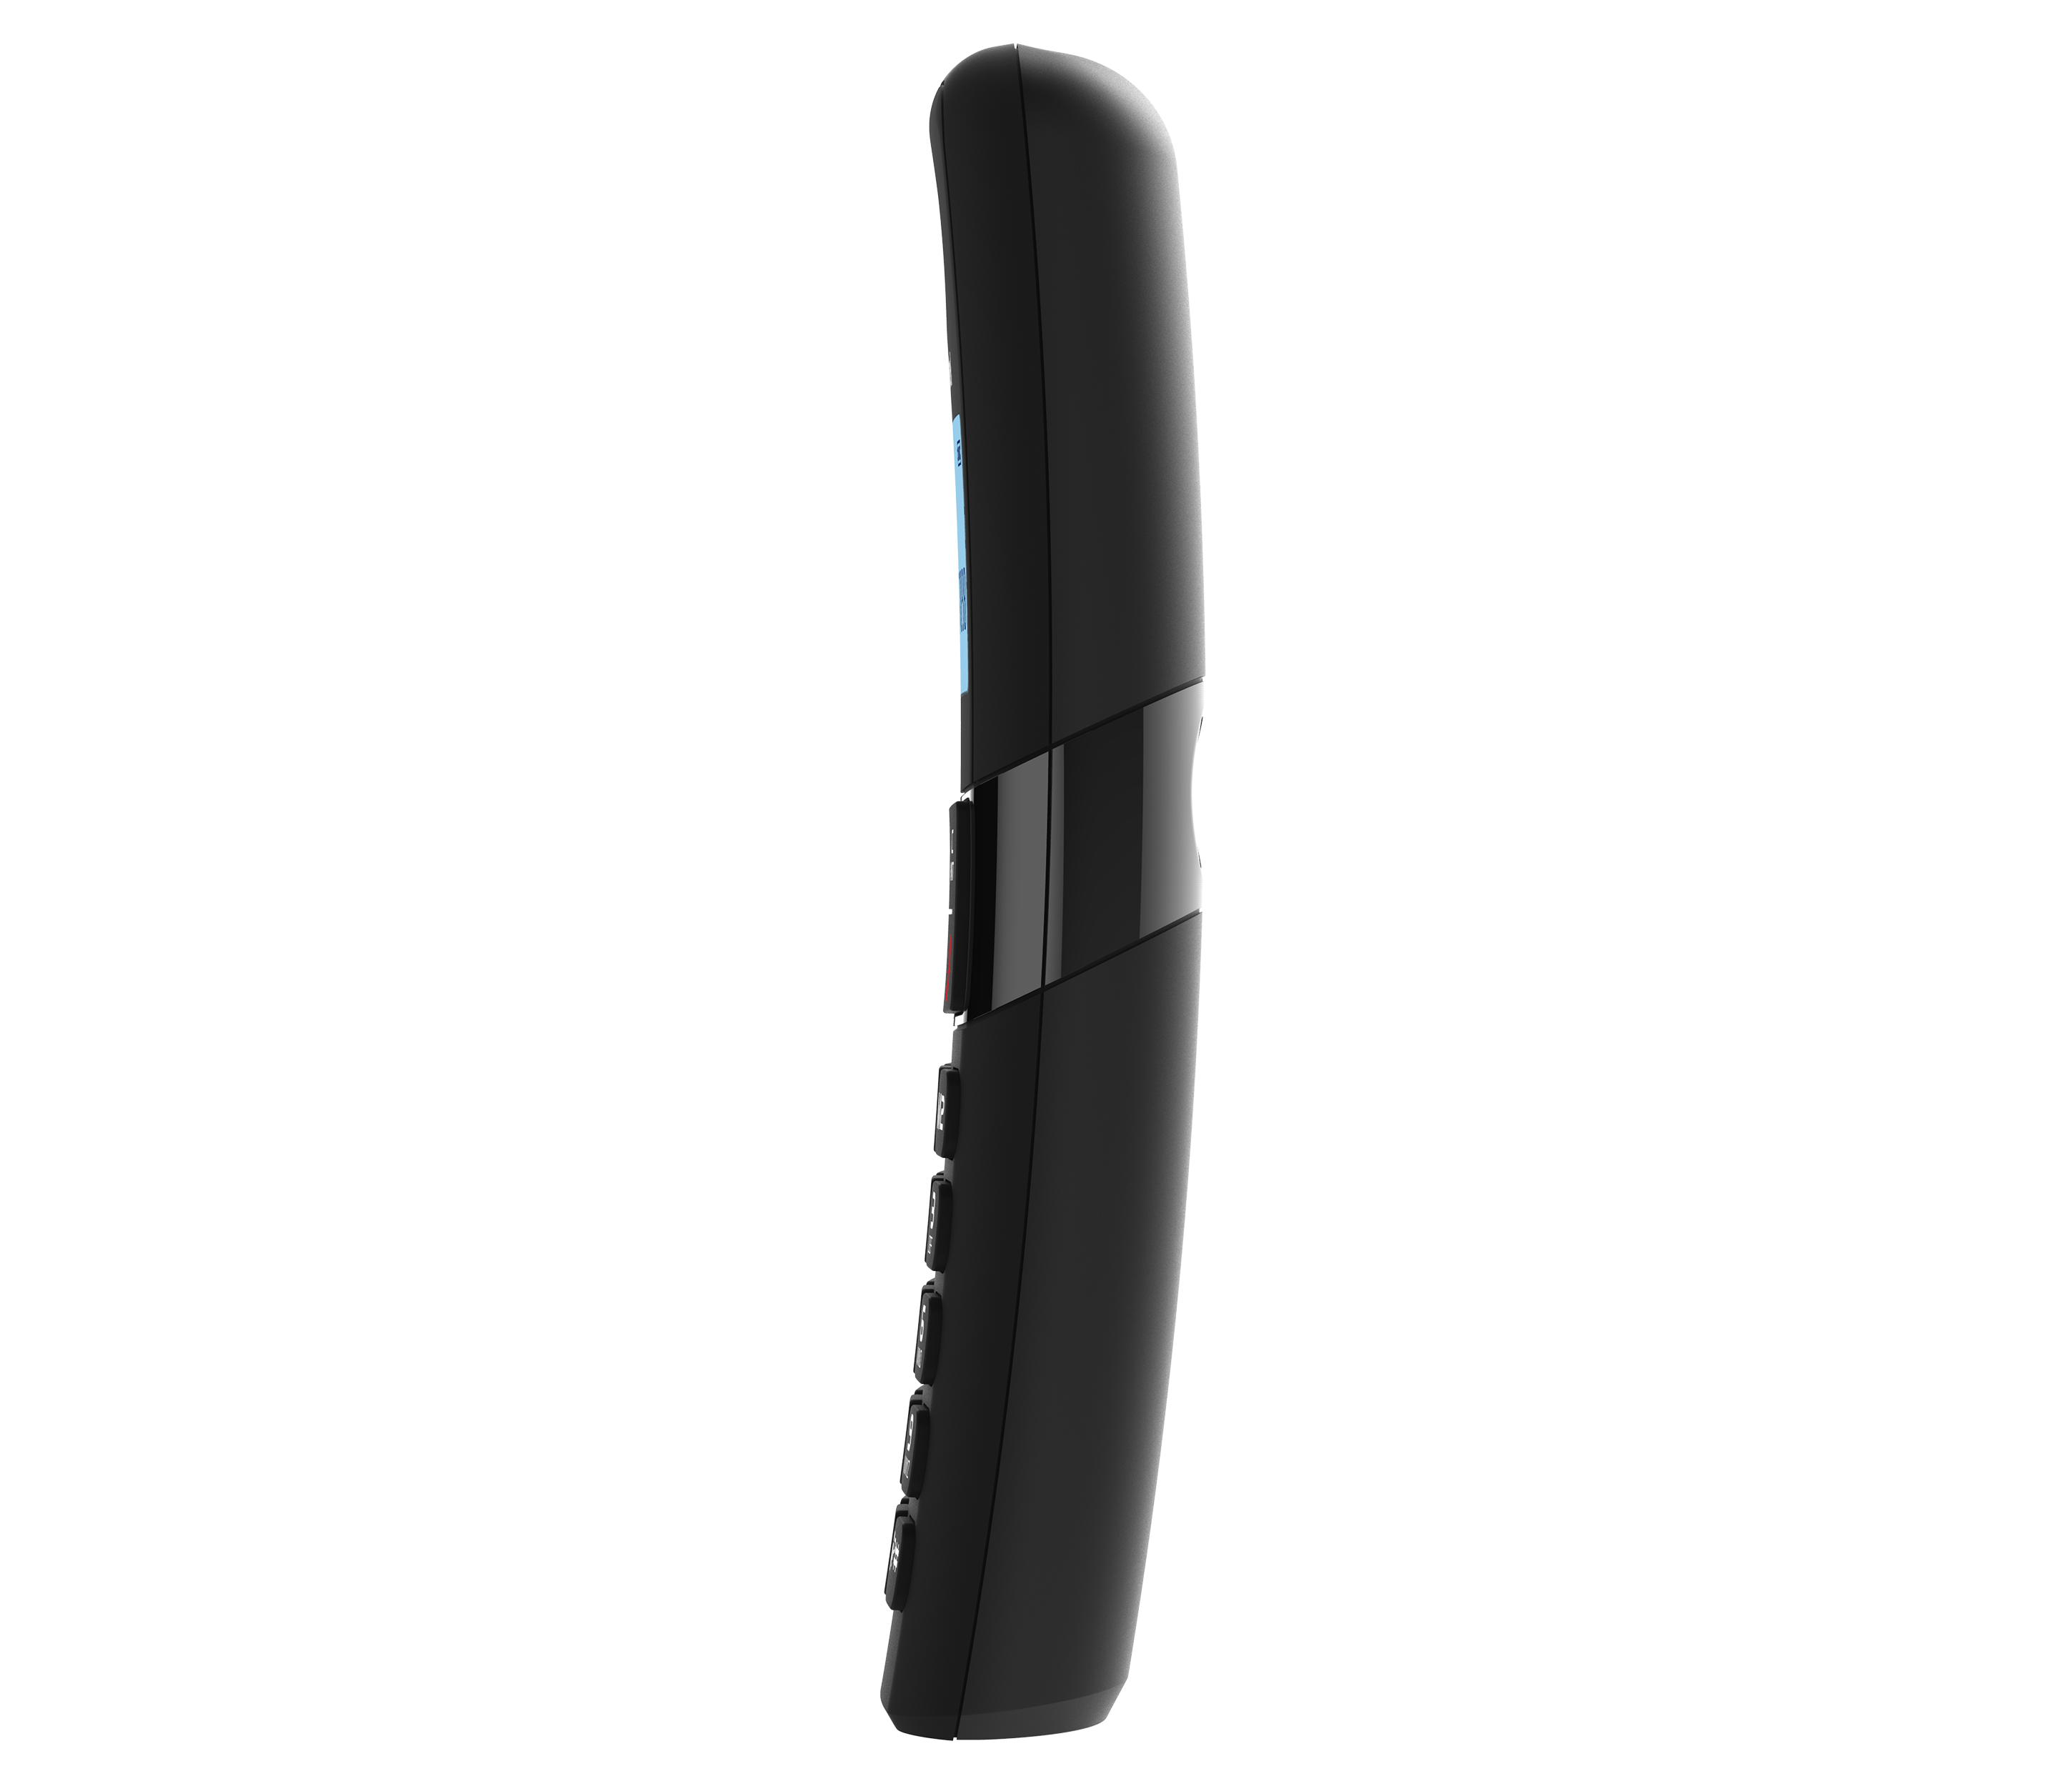 Téléphone fixe sans fil Alcatel F860 Duo Noir - Téléphone sans fil